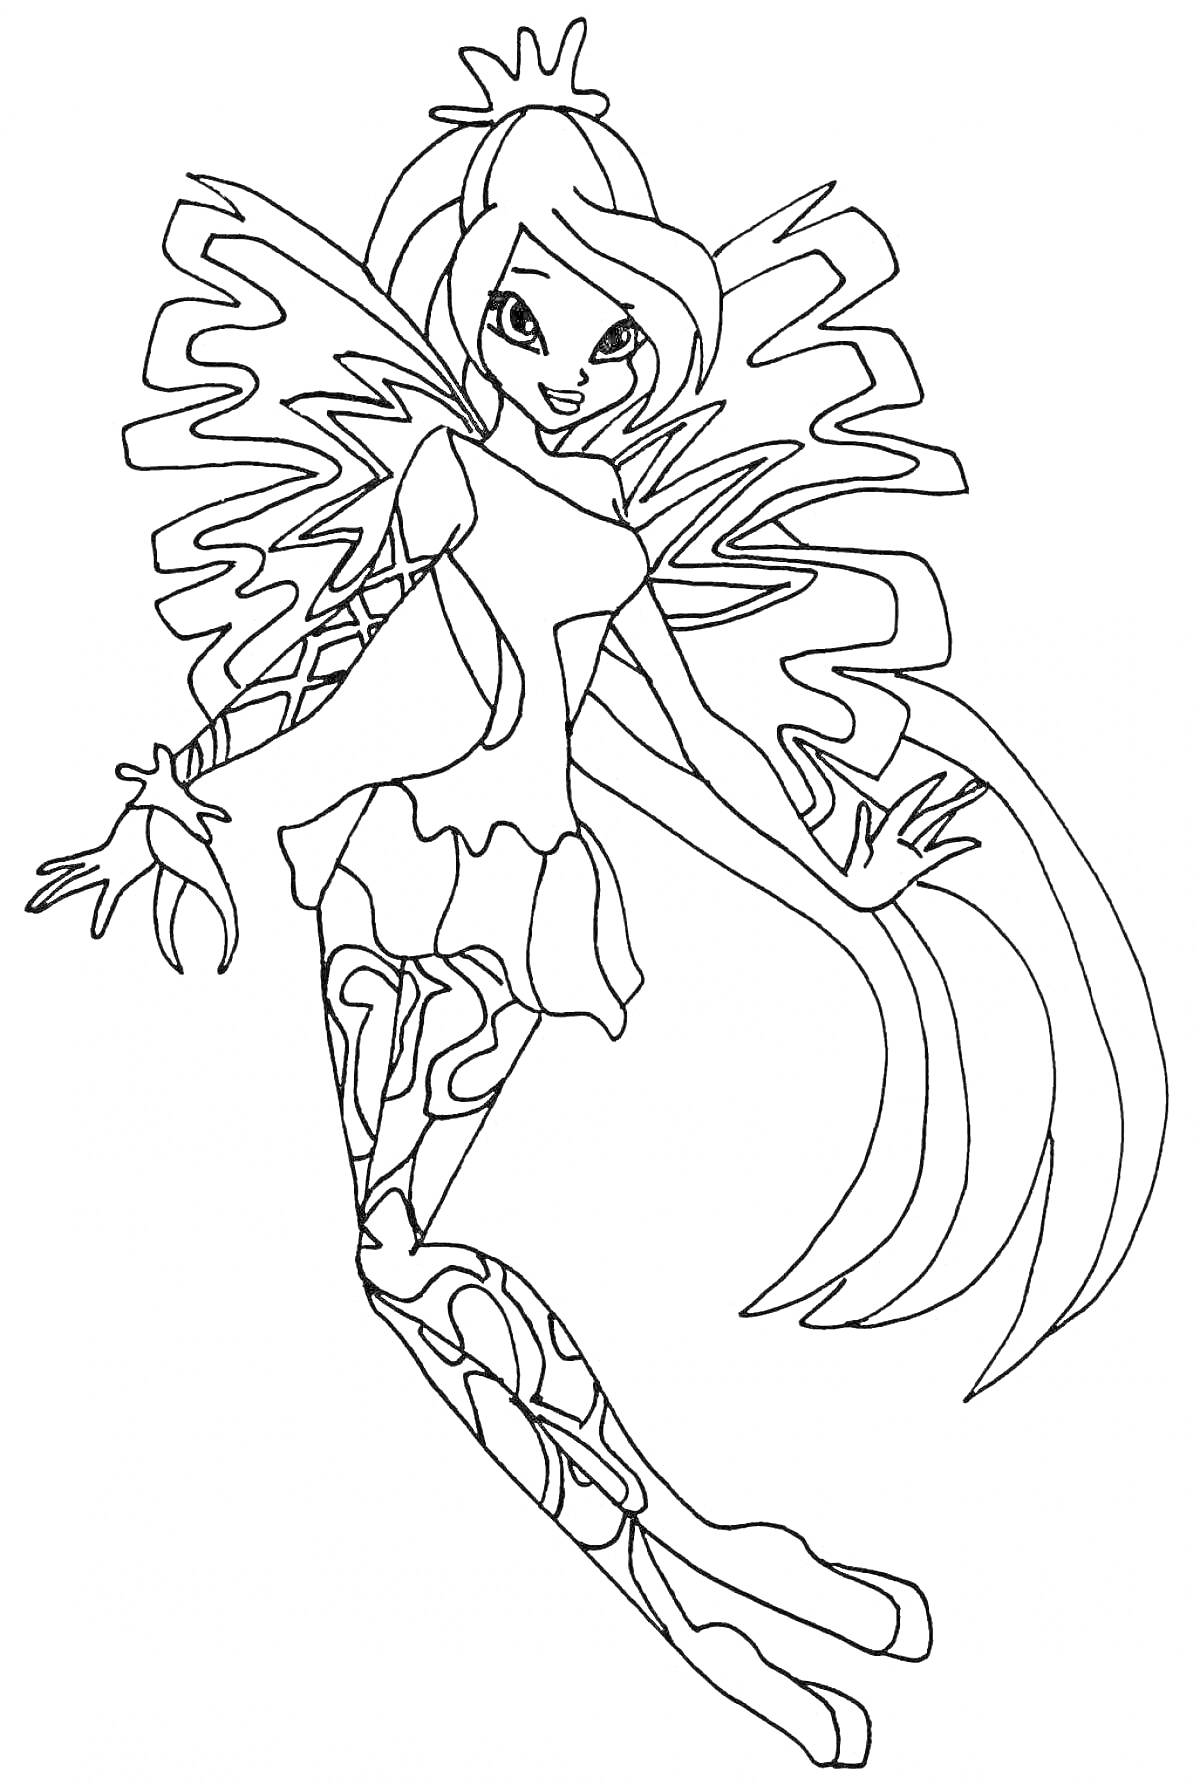 Раскраска Фея с длинными волосами в наряде с узорами и крыльями